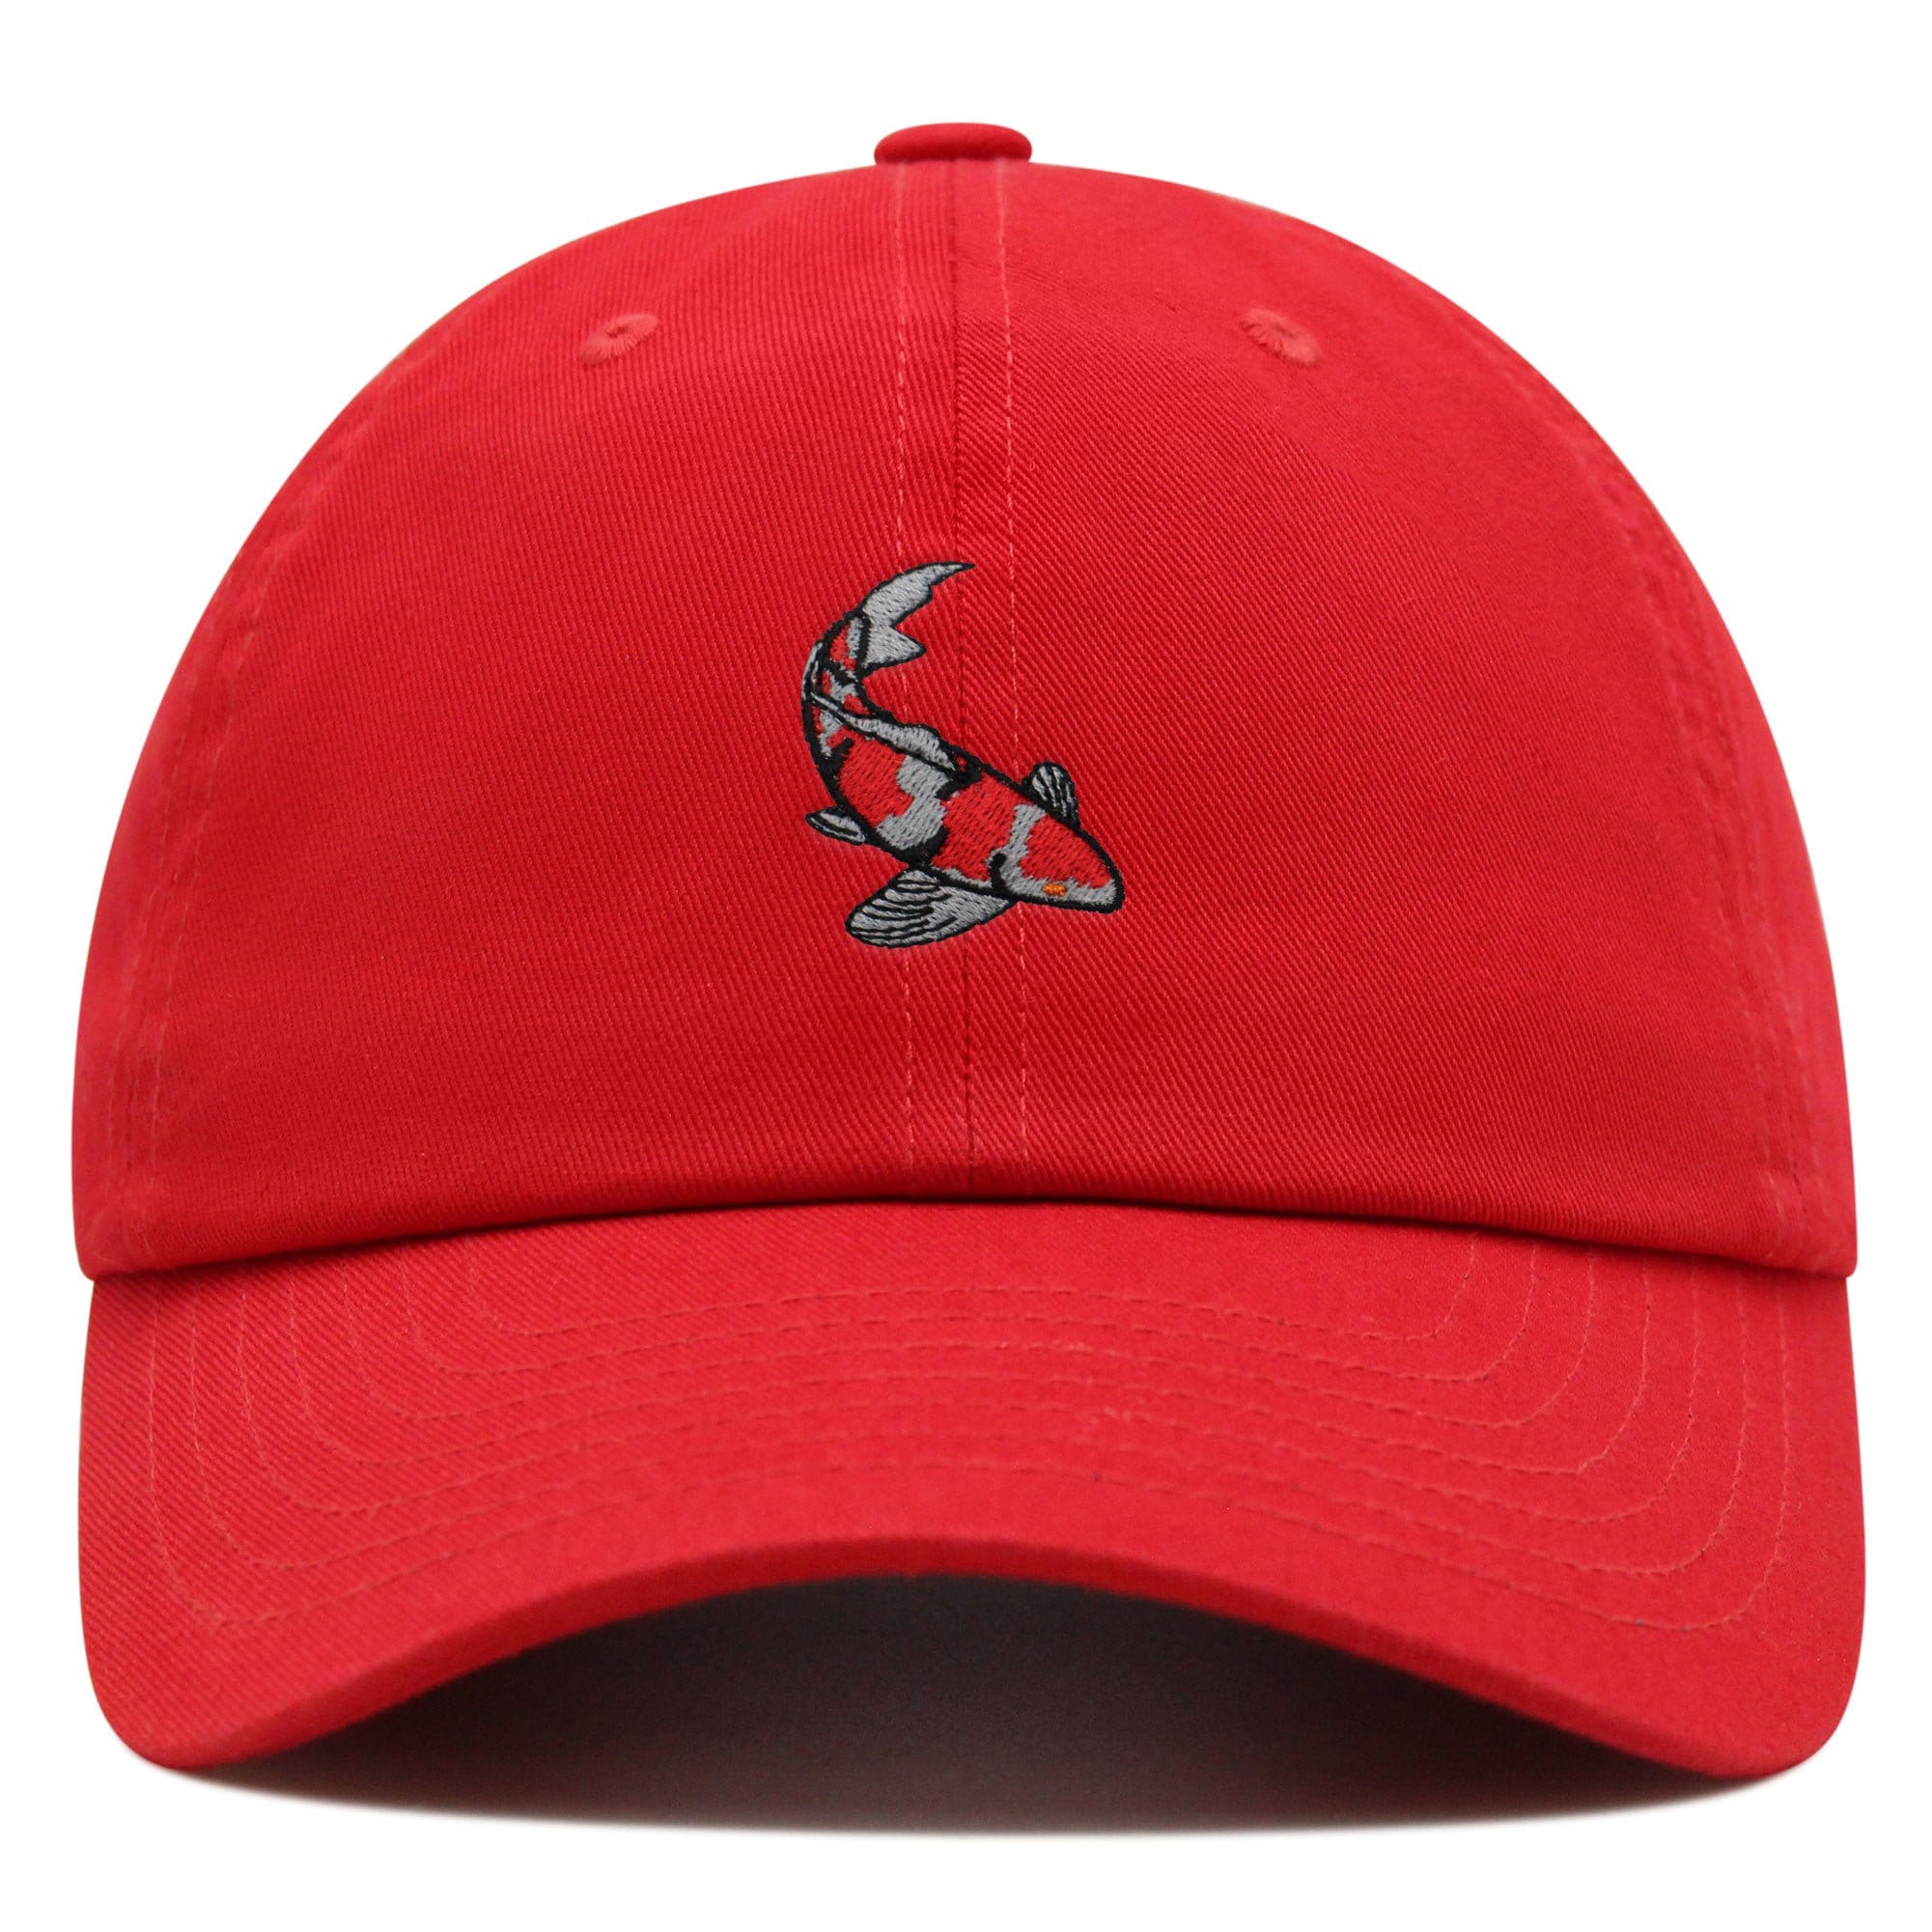 Koi Fish Premium Dad Hat Embroidered Baseball Cap Japan